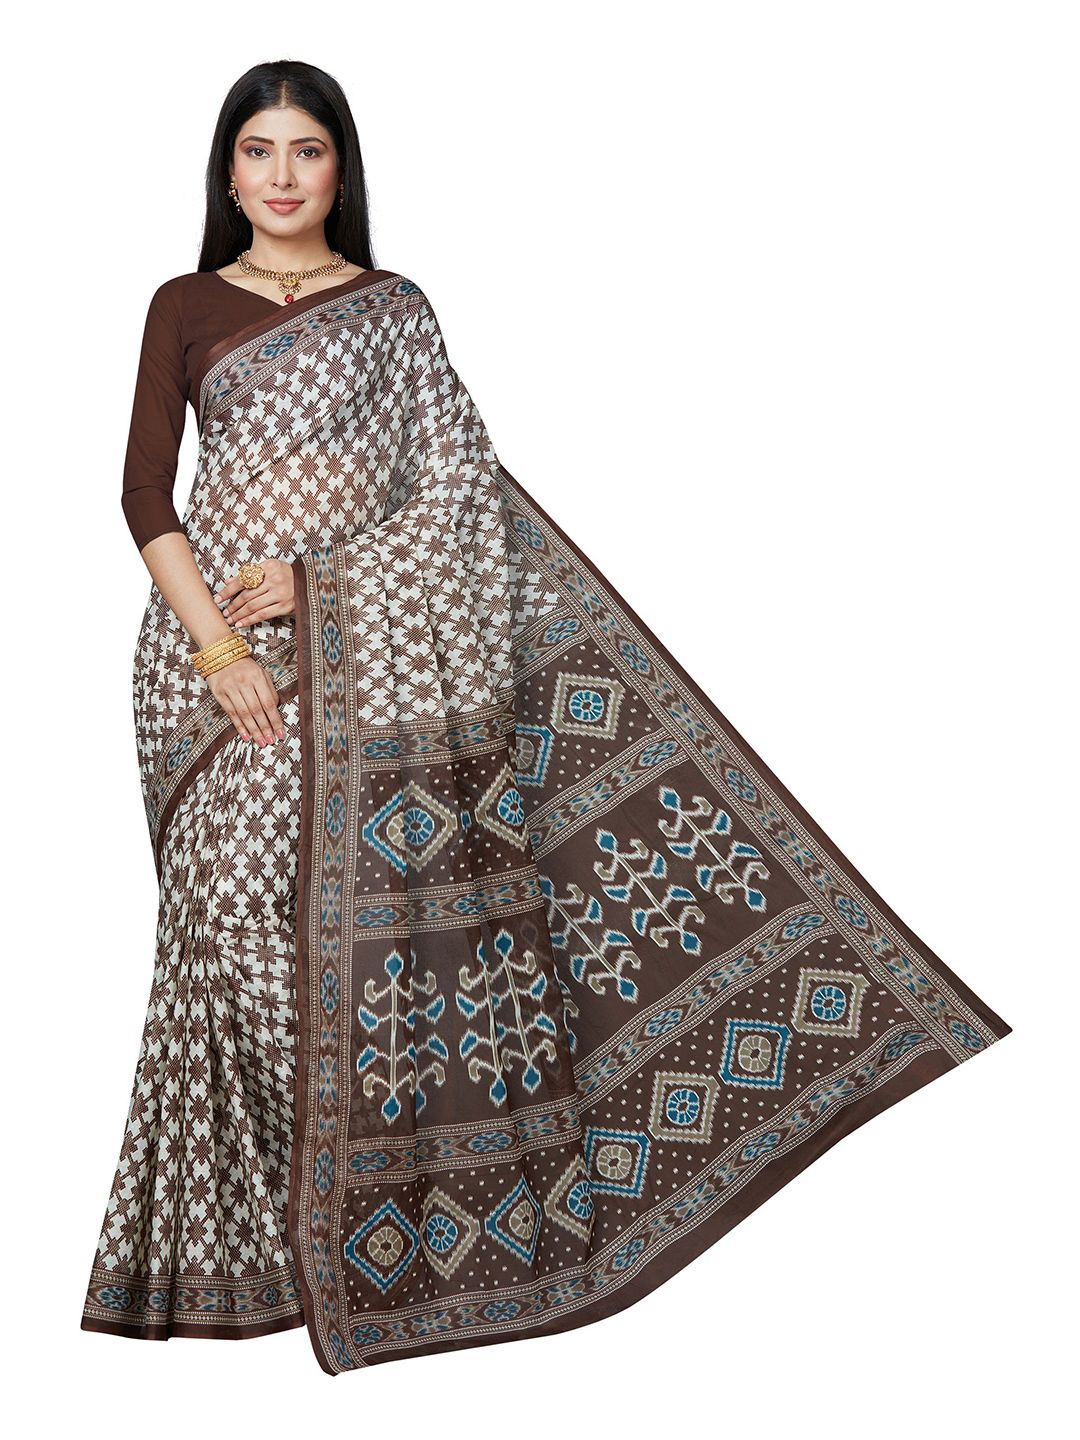 SHANVIKA White & Blue Checked Pure Cotton Block Print Saree Price in India